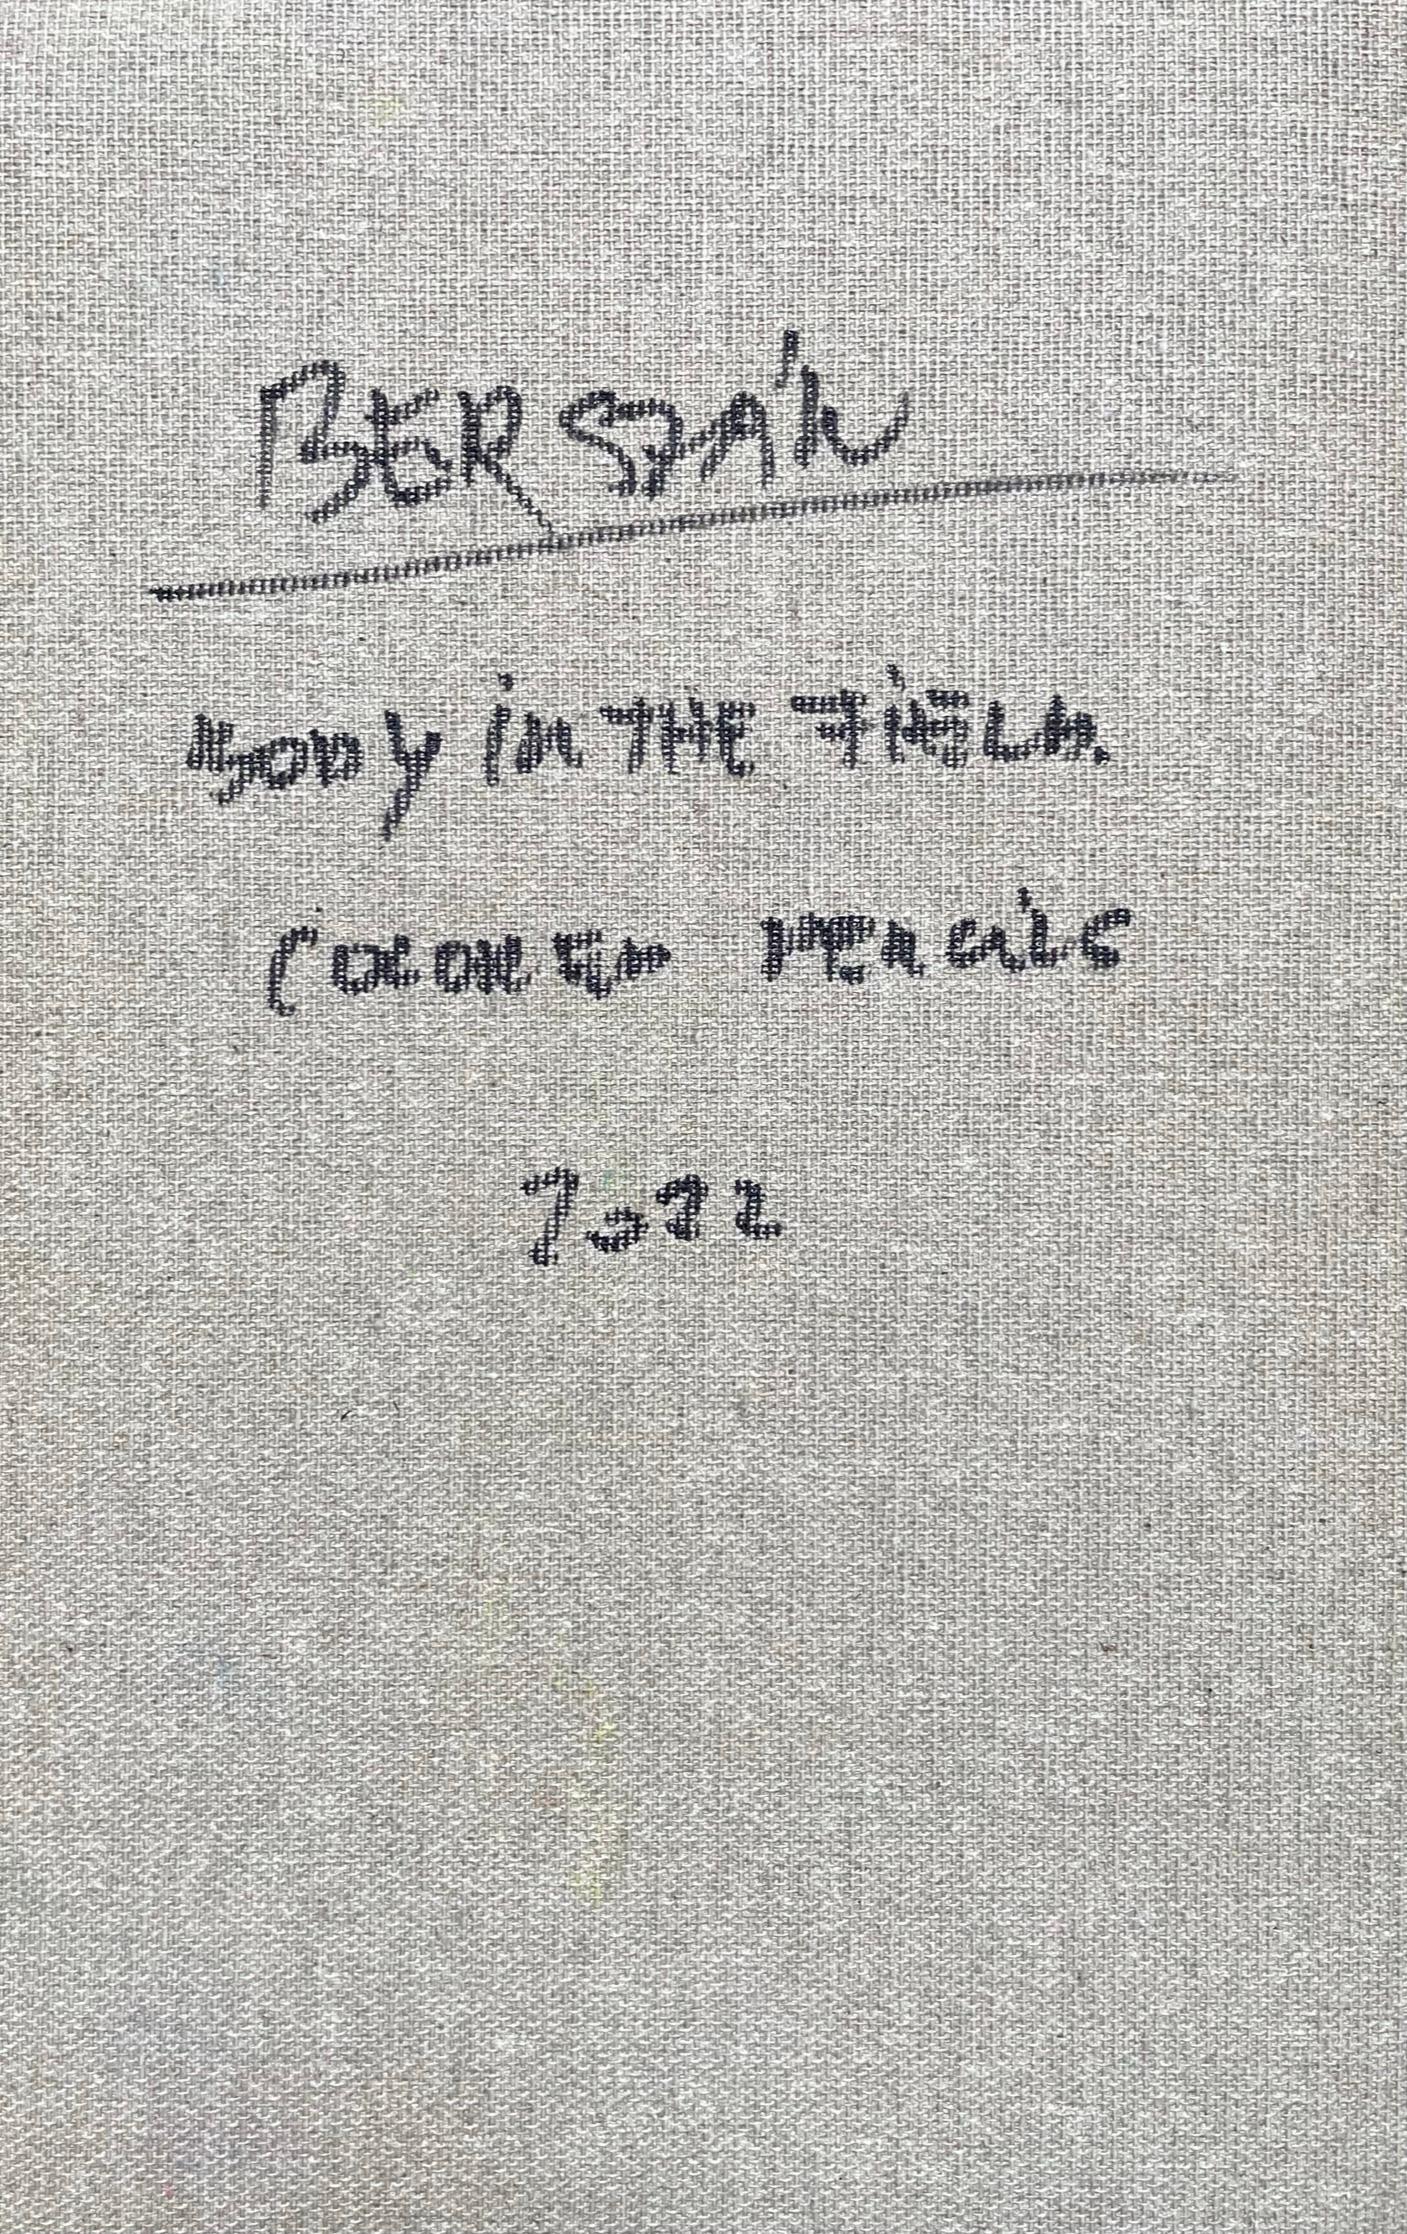 Leiche auf dem Feld #10, 2022
Farbstift auf Leinwand
9,84 H x 6,29 W Zoll.
25 H x 16 B cm
Signiert auf der Rückseite

Zsolt Berszán verkörpert in seinen Werken die Auflösung des menschlichen Körpers durch das Prisma des Fragments, des zerteilten